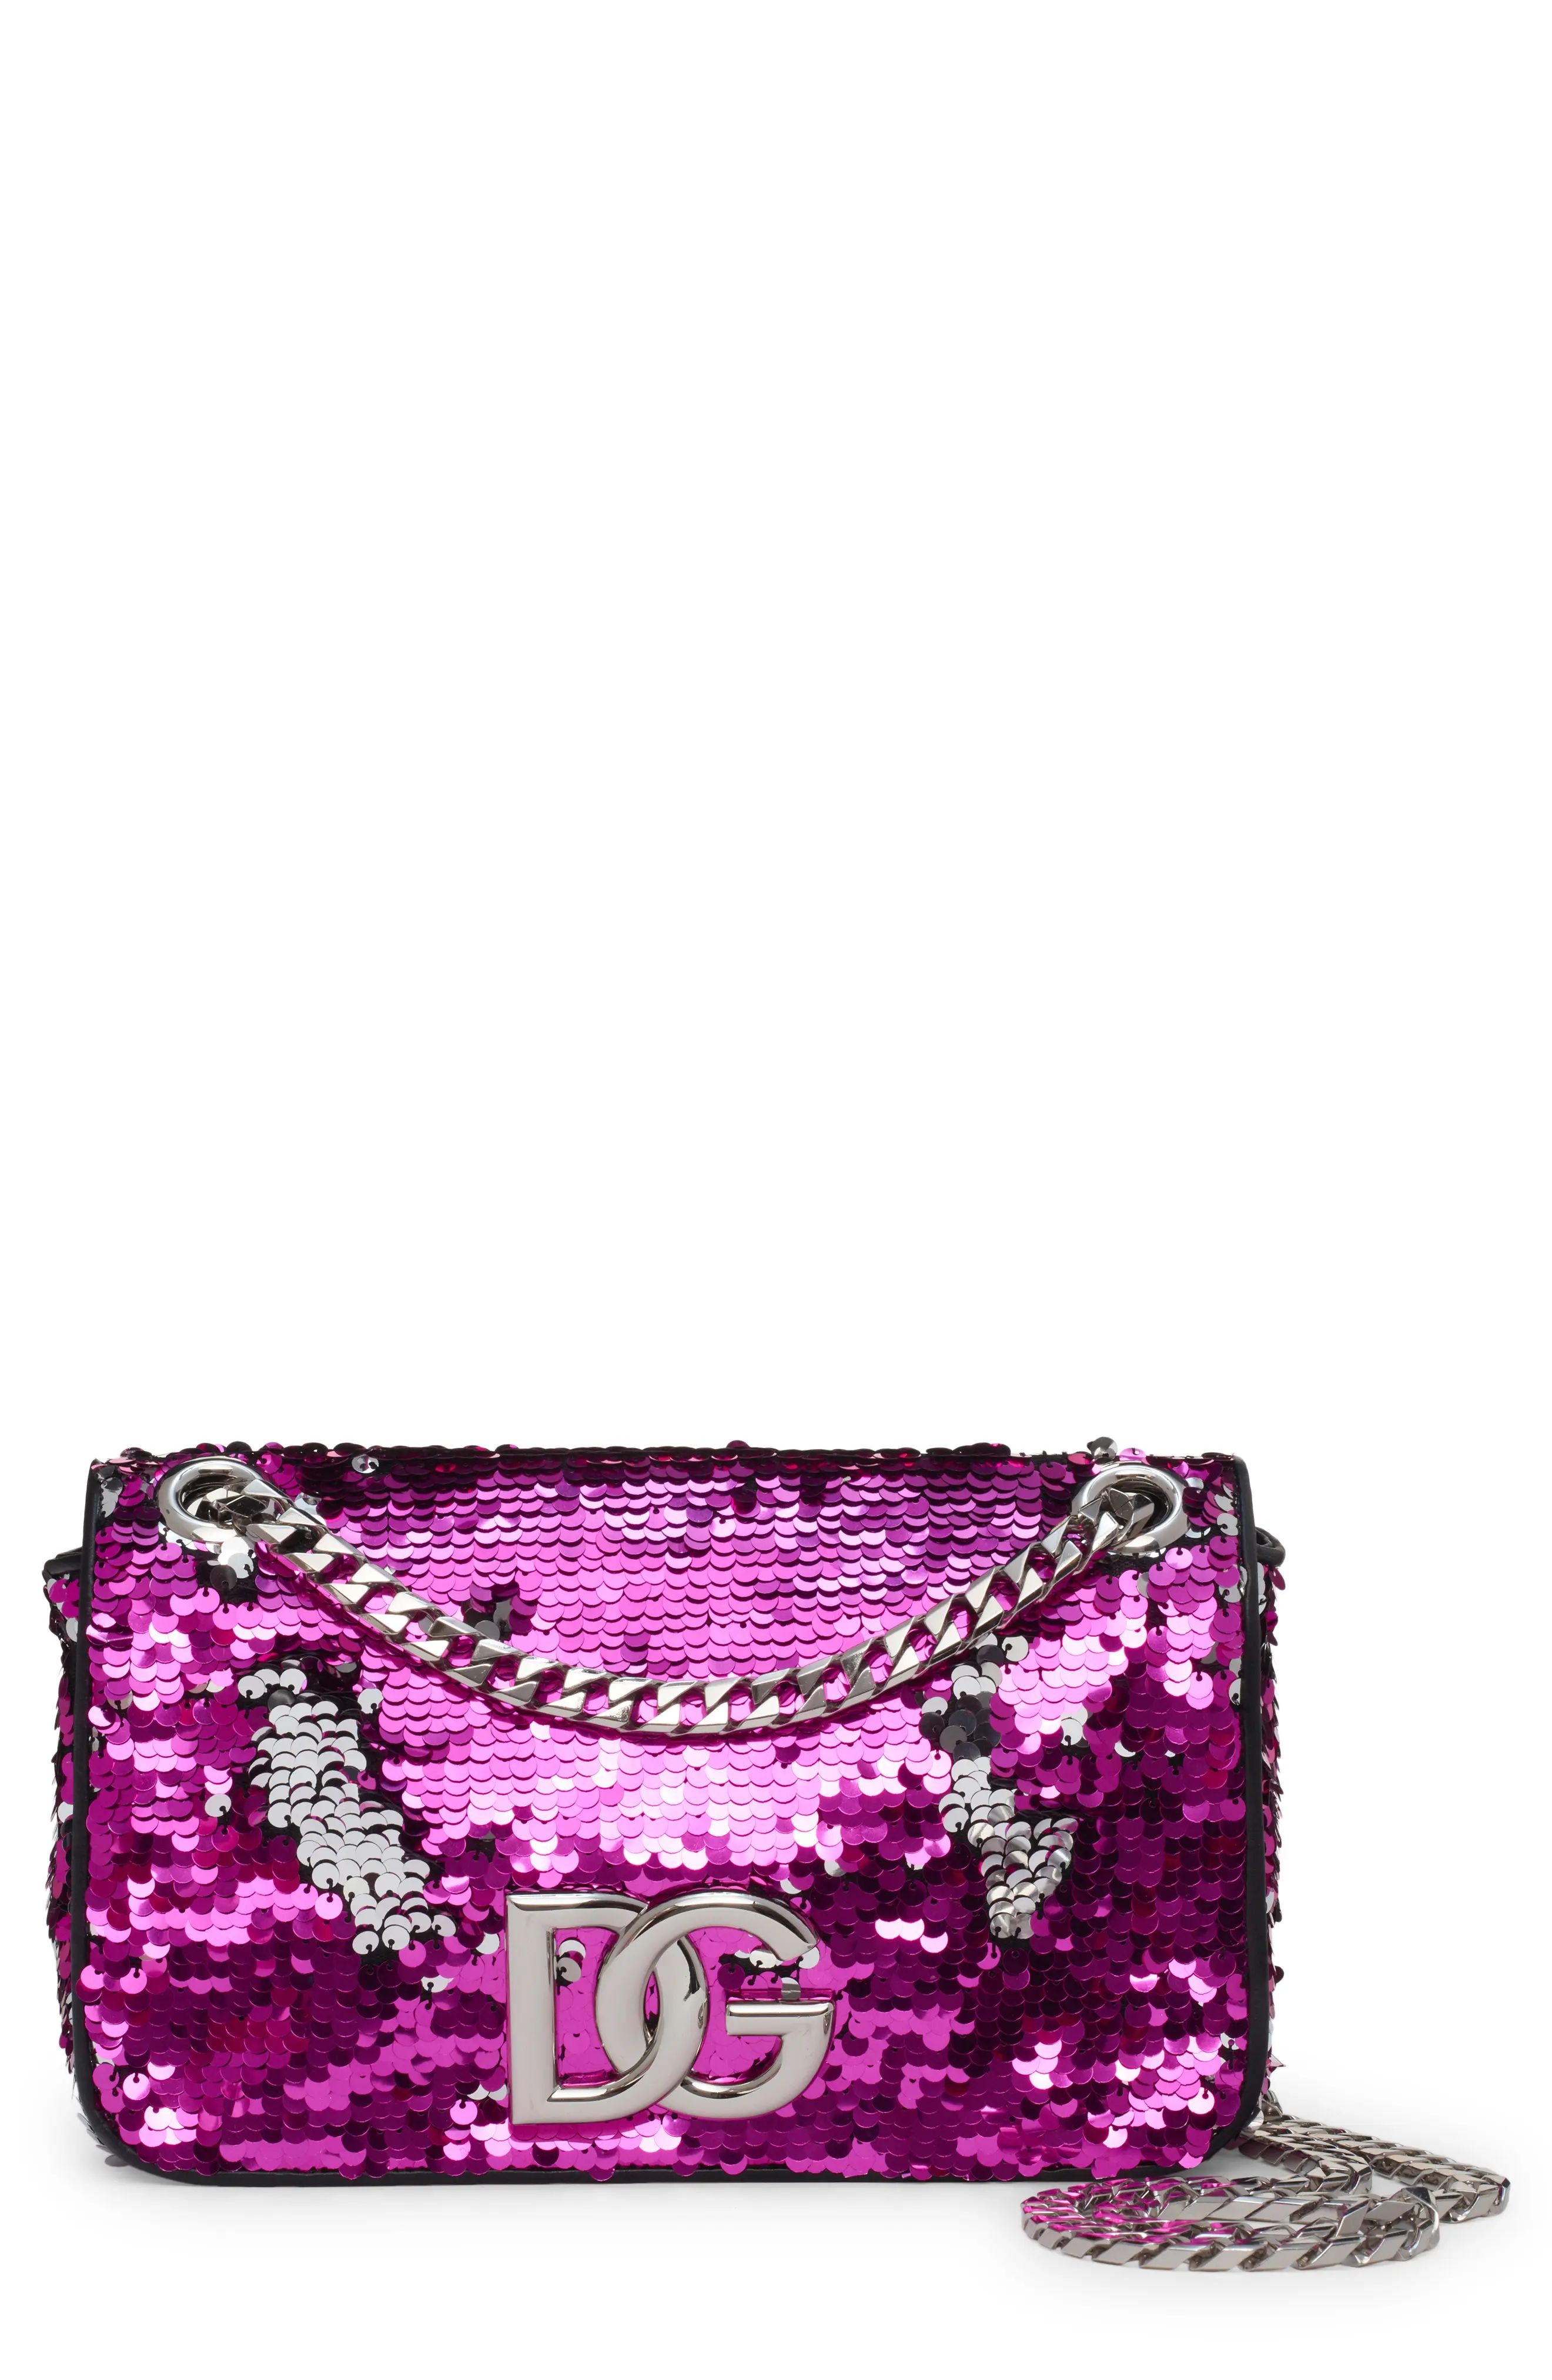 Dolce & Gabbana DG Girls 3.5 Sequin Shoulder Bag in Fuxia/Argento at Nordstrom | Nordstrom